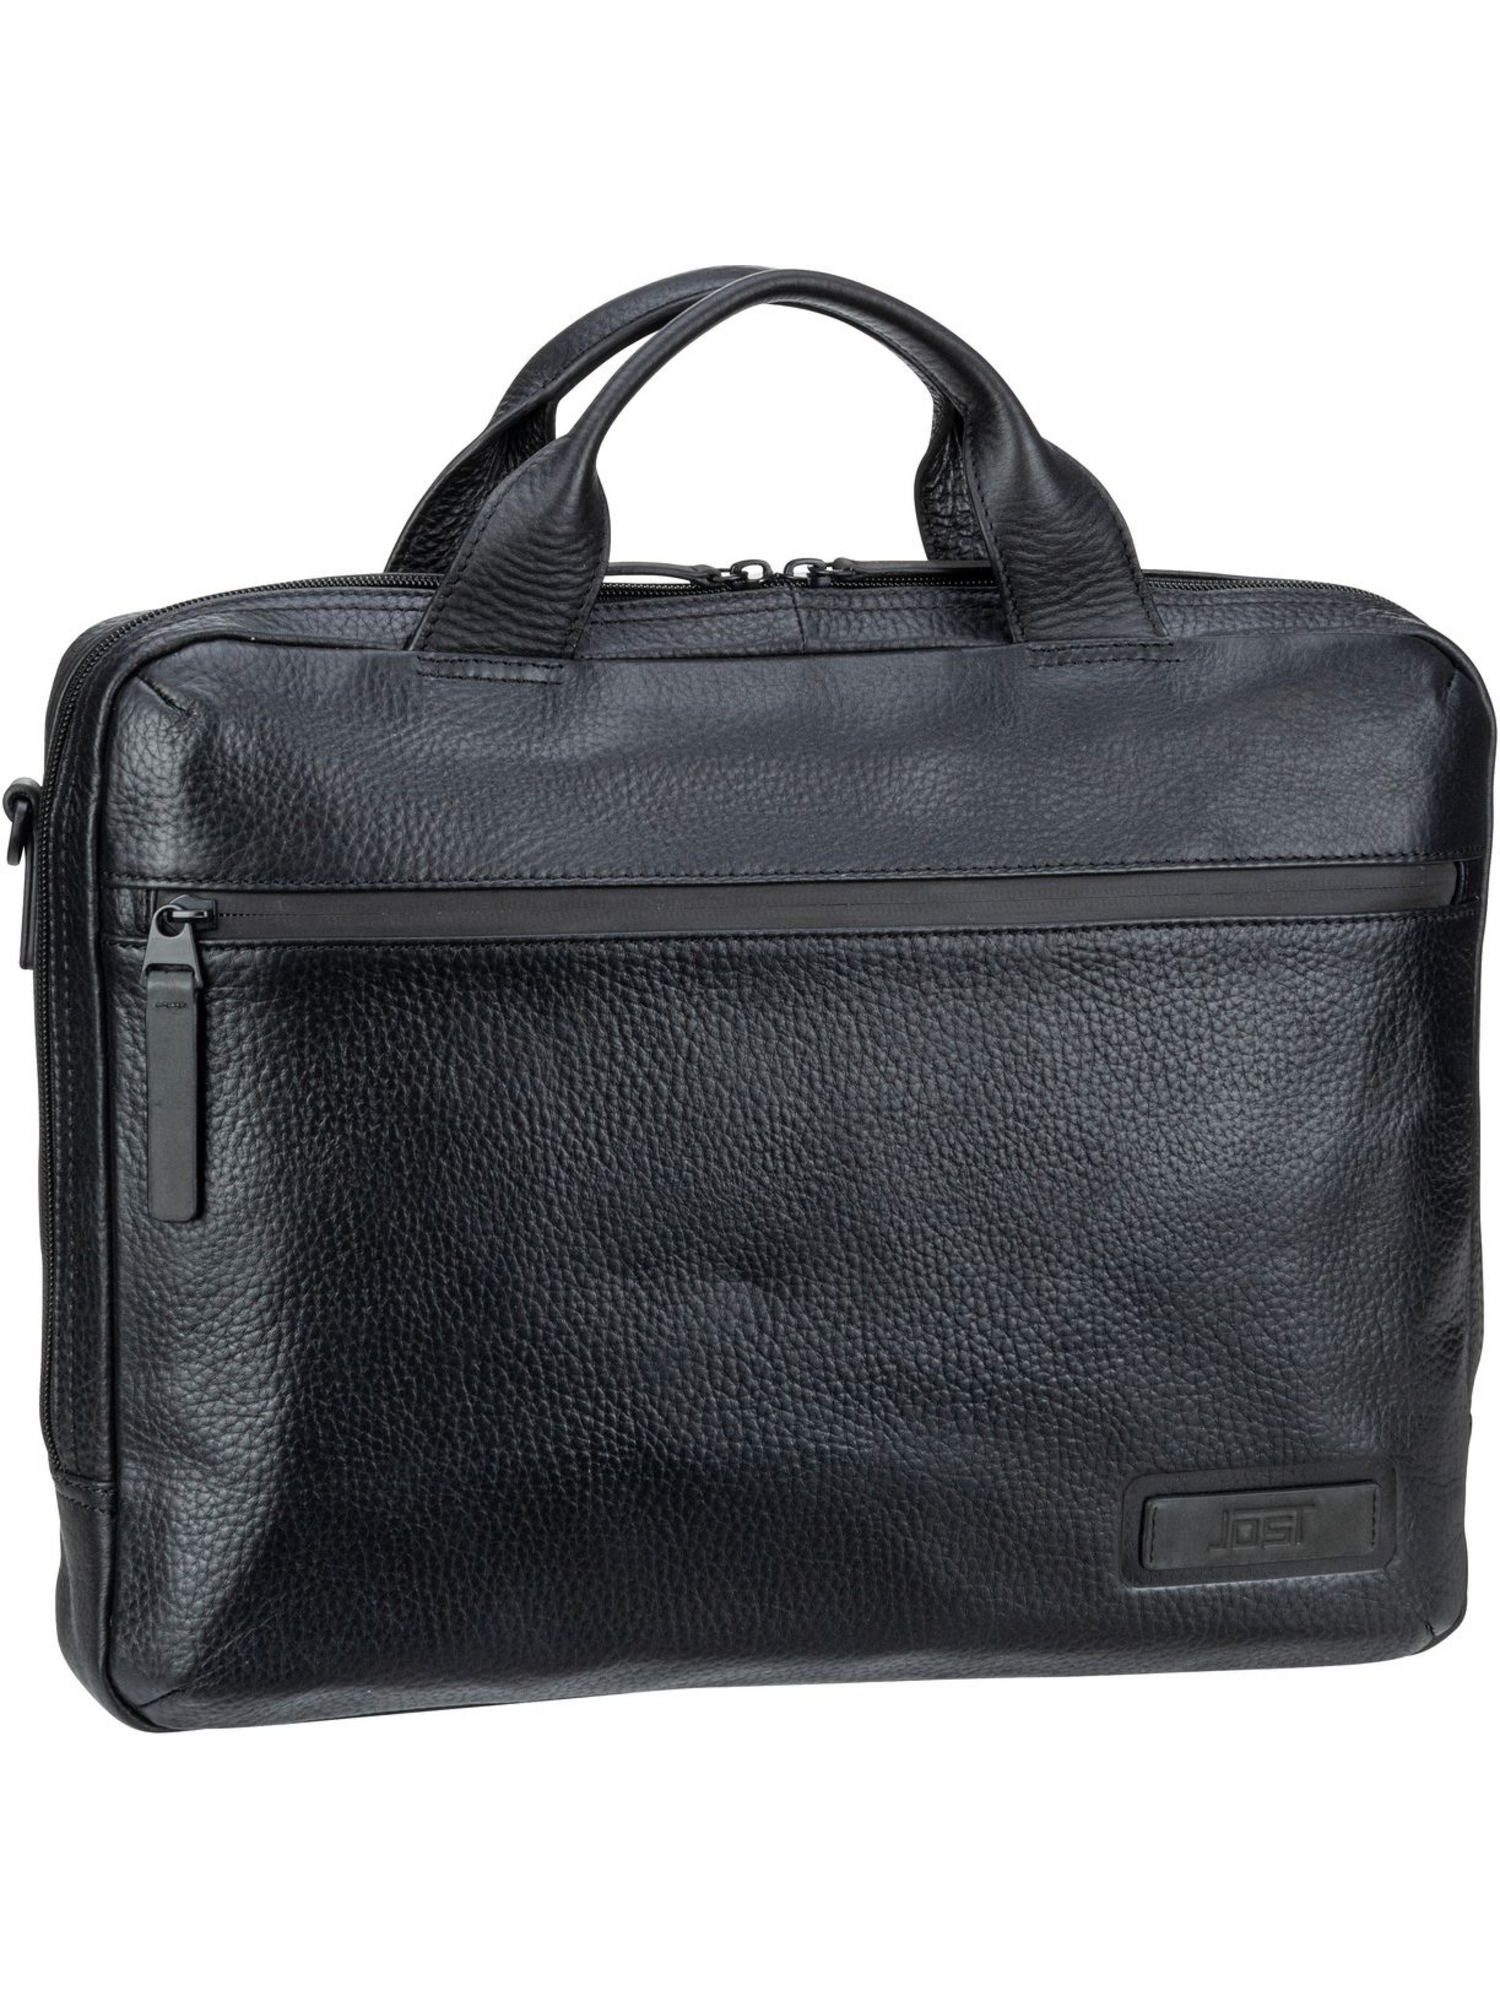 Сумка для ноутбука Jost Stockholm Business Bag S 1 Comp, черный